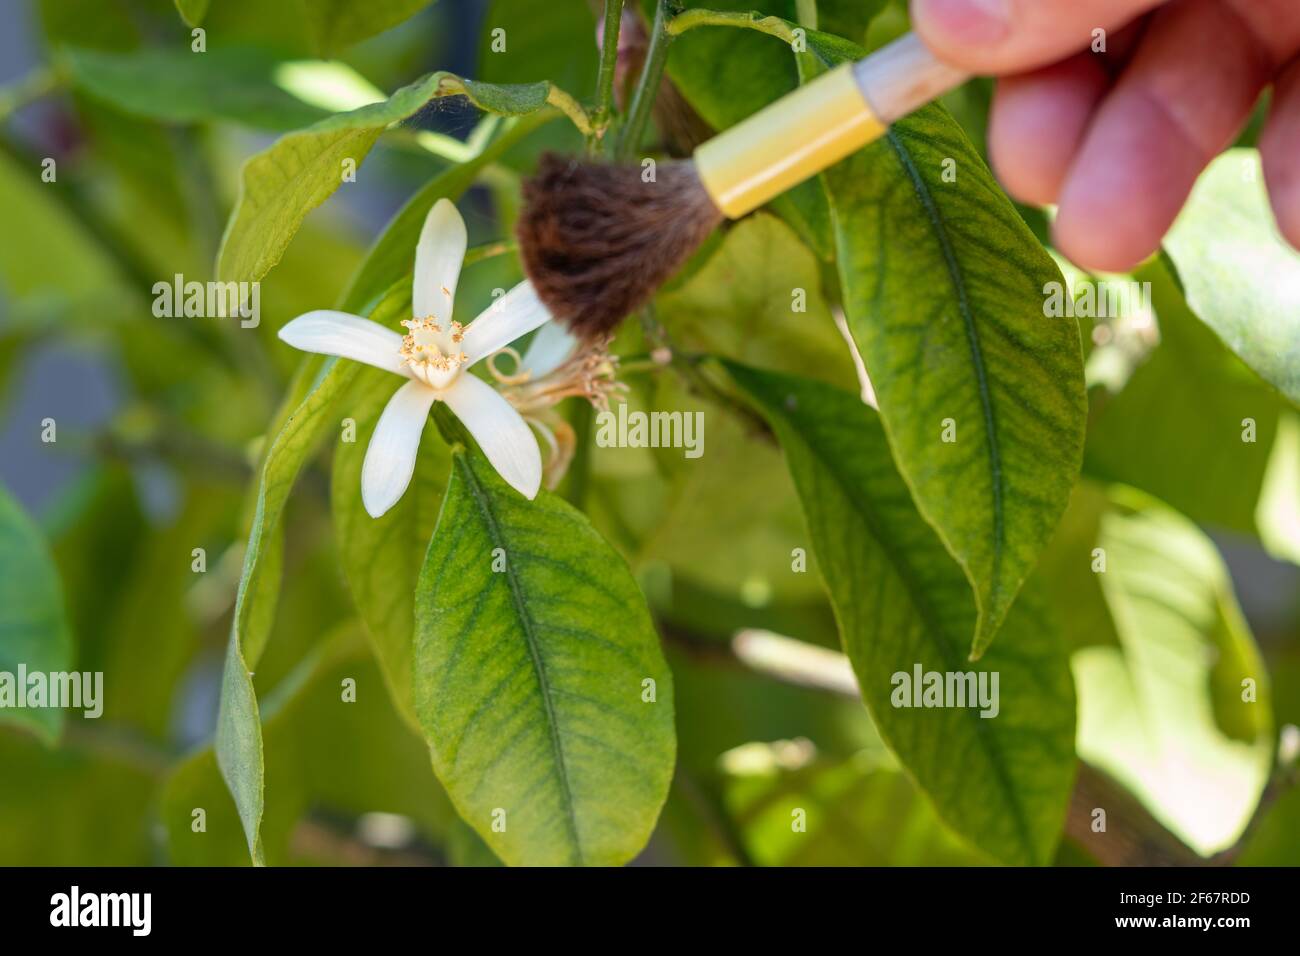 Impollinazione artificiale di fiori d'arancio con pennello. Il giardino serra ha bisogno di assistenza artificiale per aumentare la produttività. Mano con spazzola. Foto Stock